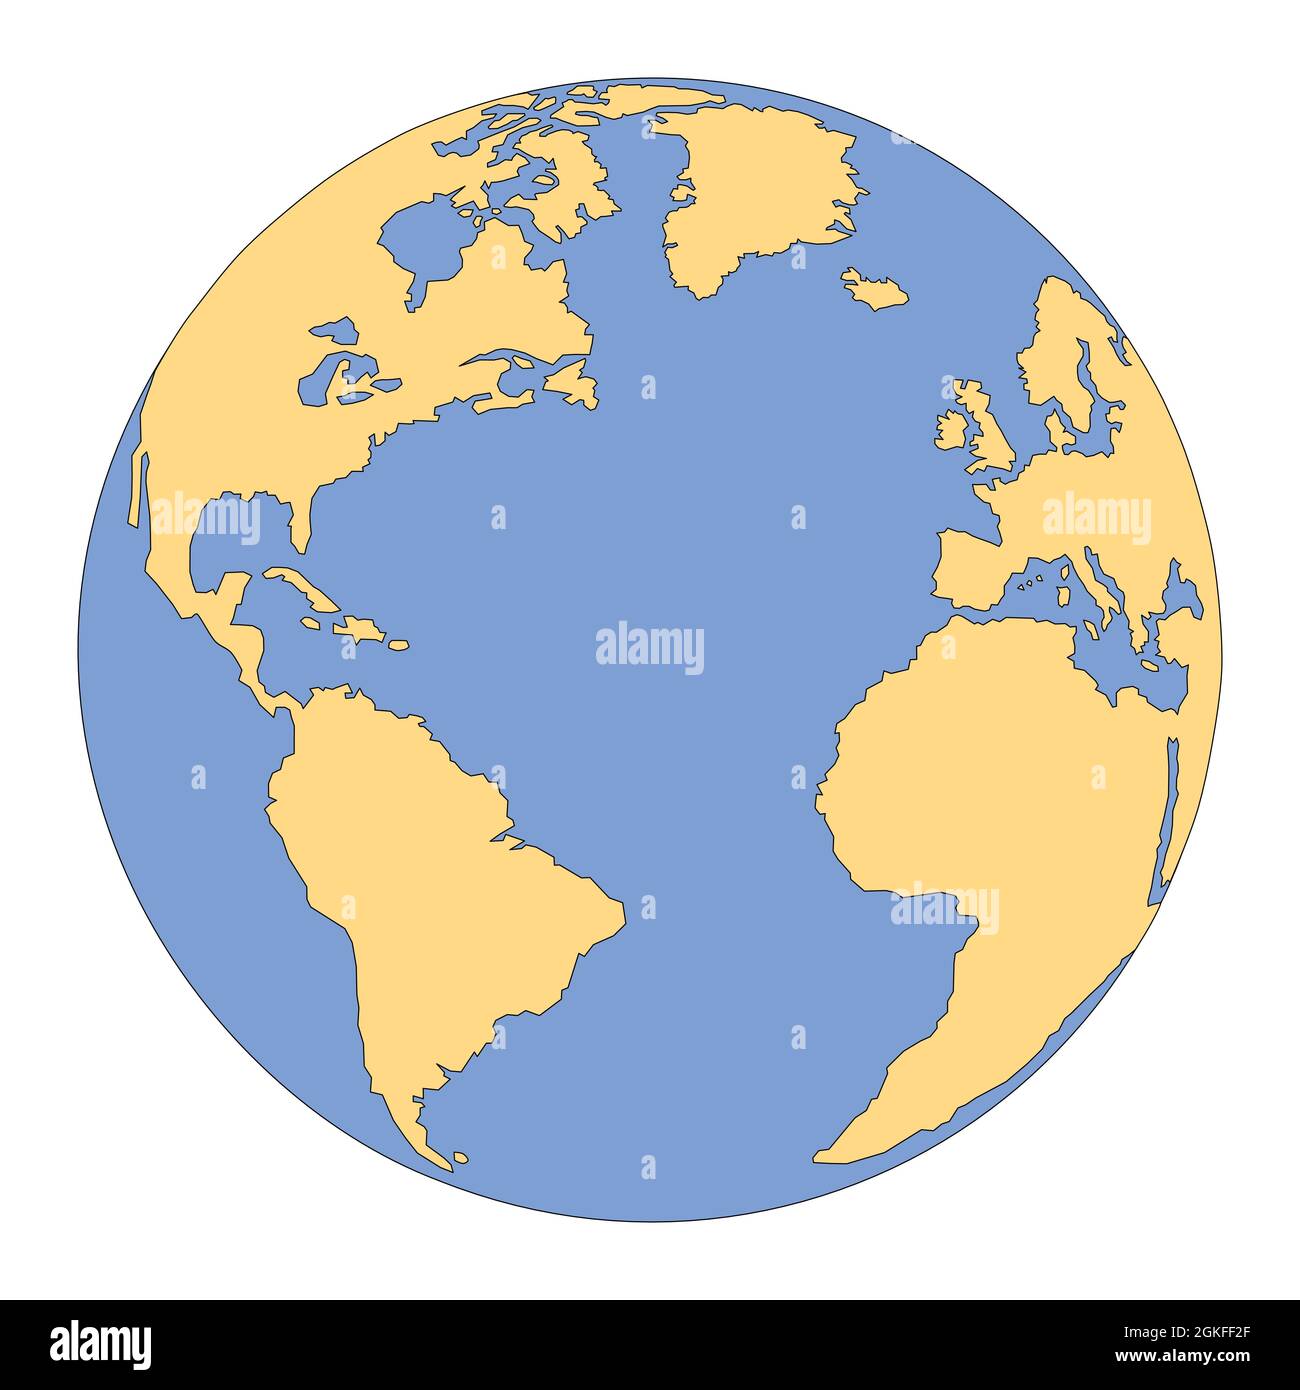 Isolierte Vektordarstellung des Planeten Erde. Skizzierte, minimalistische Skizze des Globus mit den Kontinenten Amerika, Afrika, Europa und Atlantik Stock Vektor